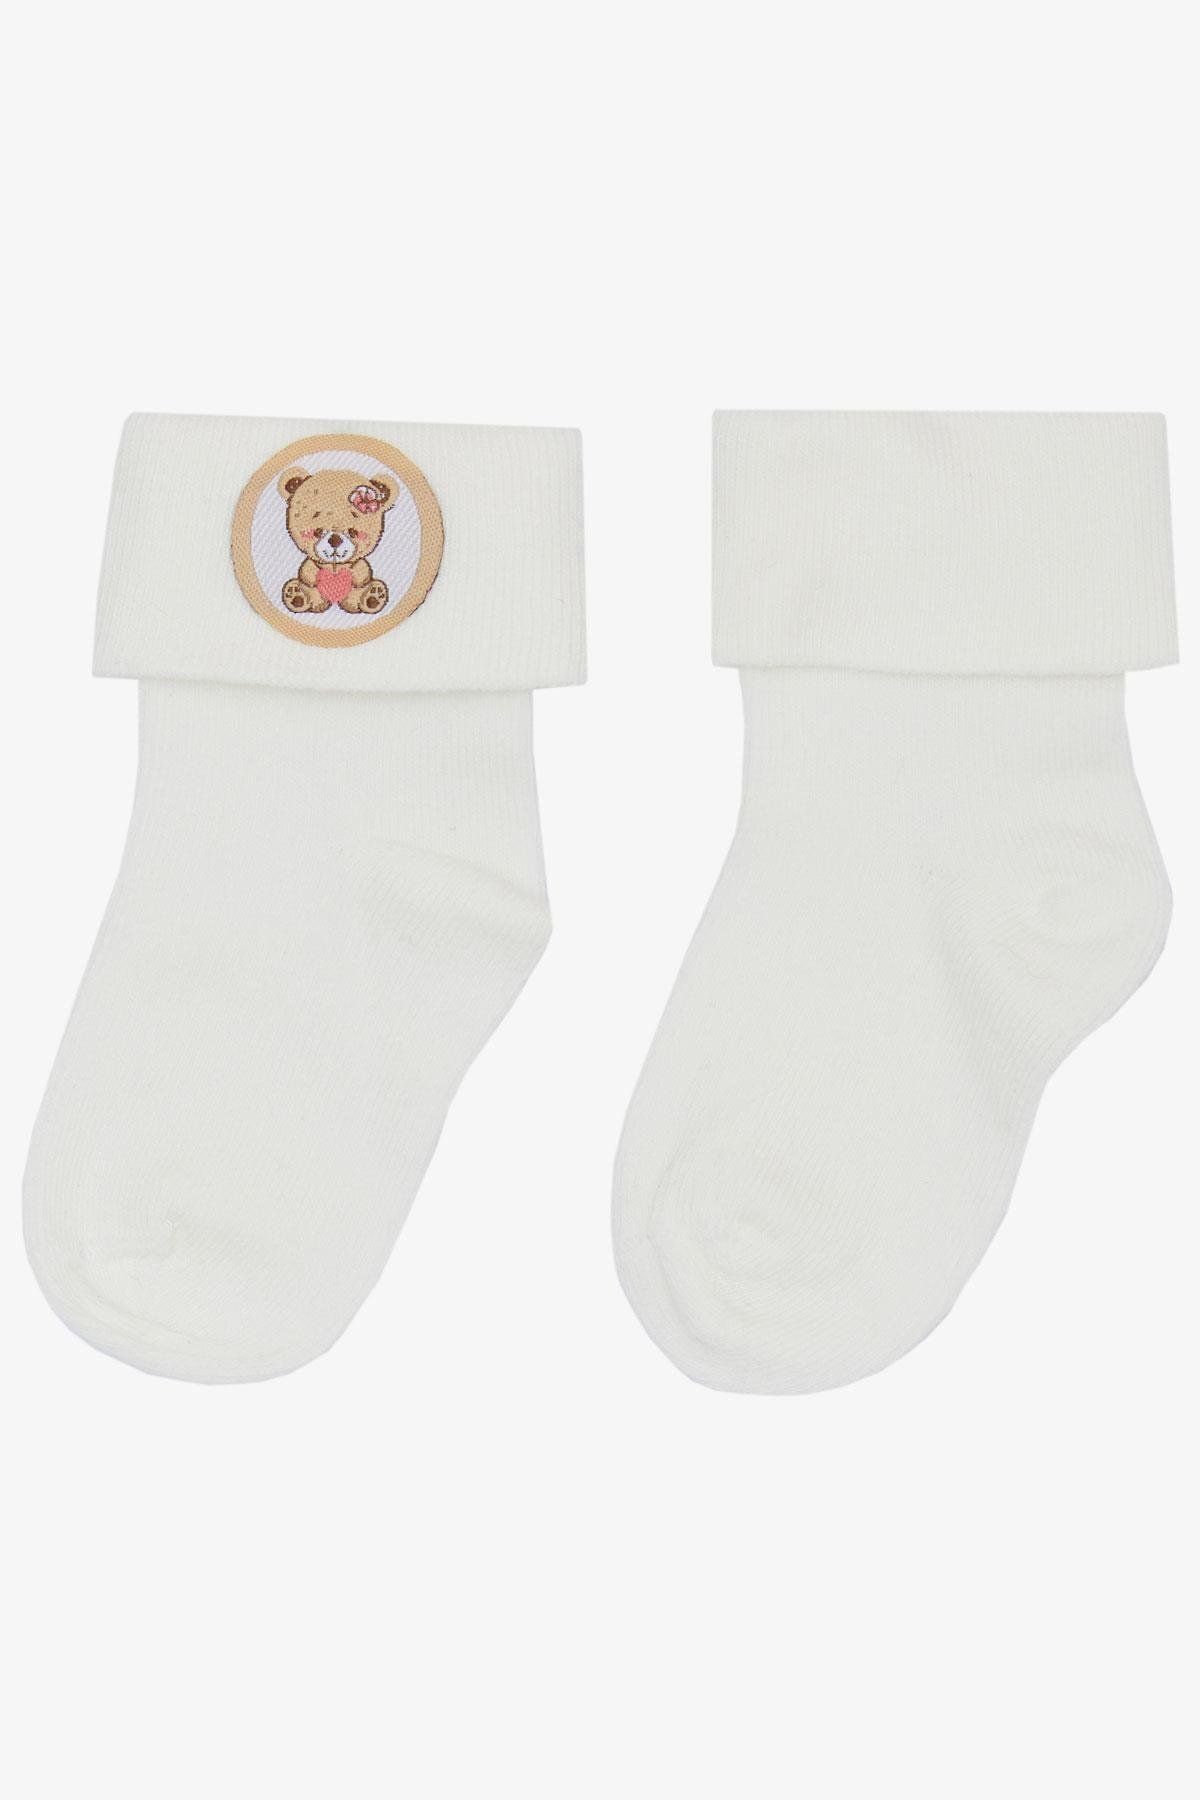 Katamino Kız Bebek Soket Çorap Yavru Ayıcık Baskılı 0-18 Ay, Ekru